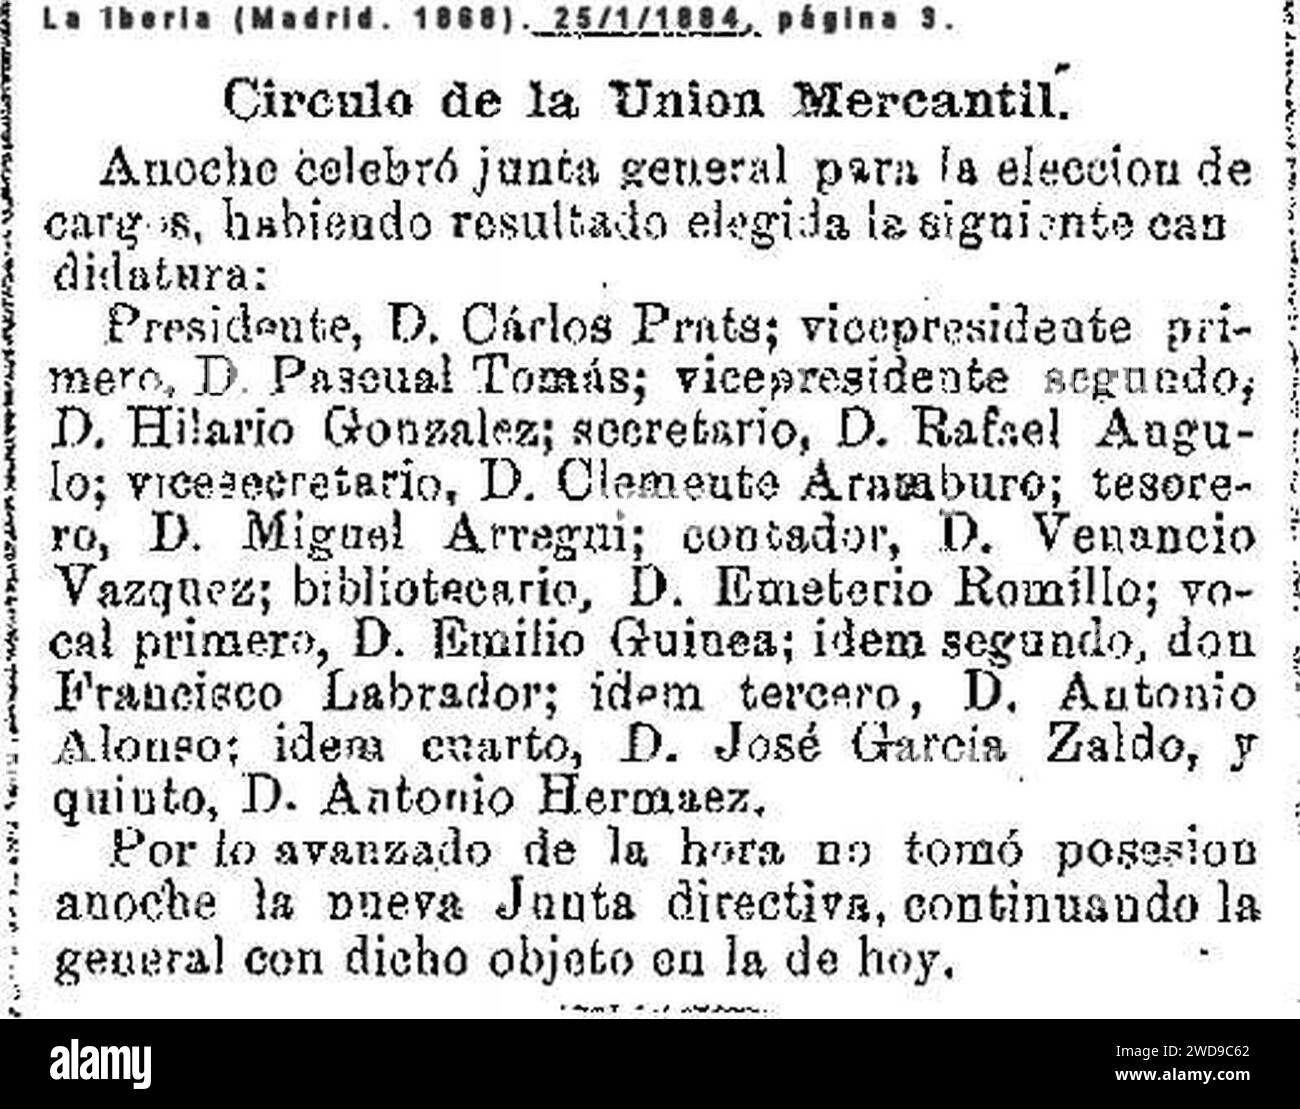 1884-01-25-La-iberia-Emeterio-Romillo-bibliotecario-Circulo-Mercantil. Stock Photo